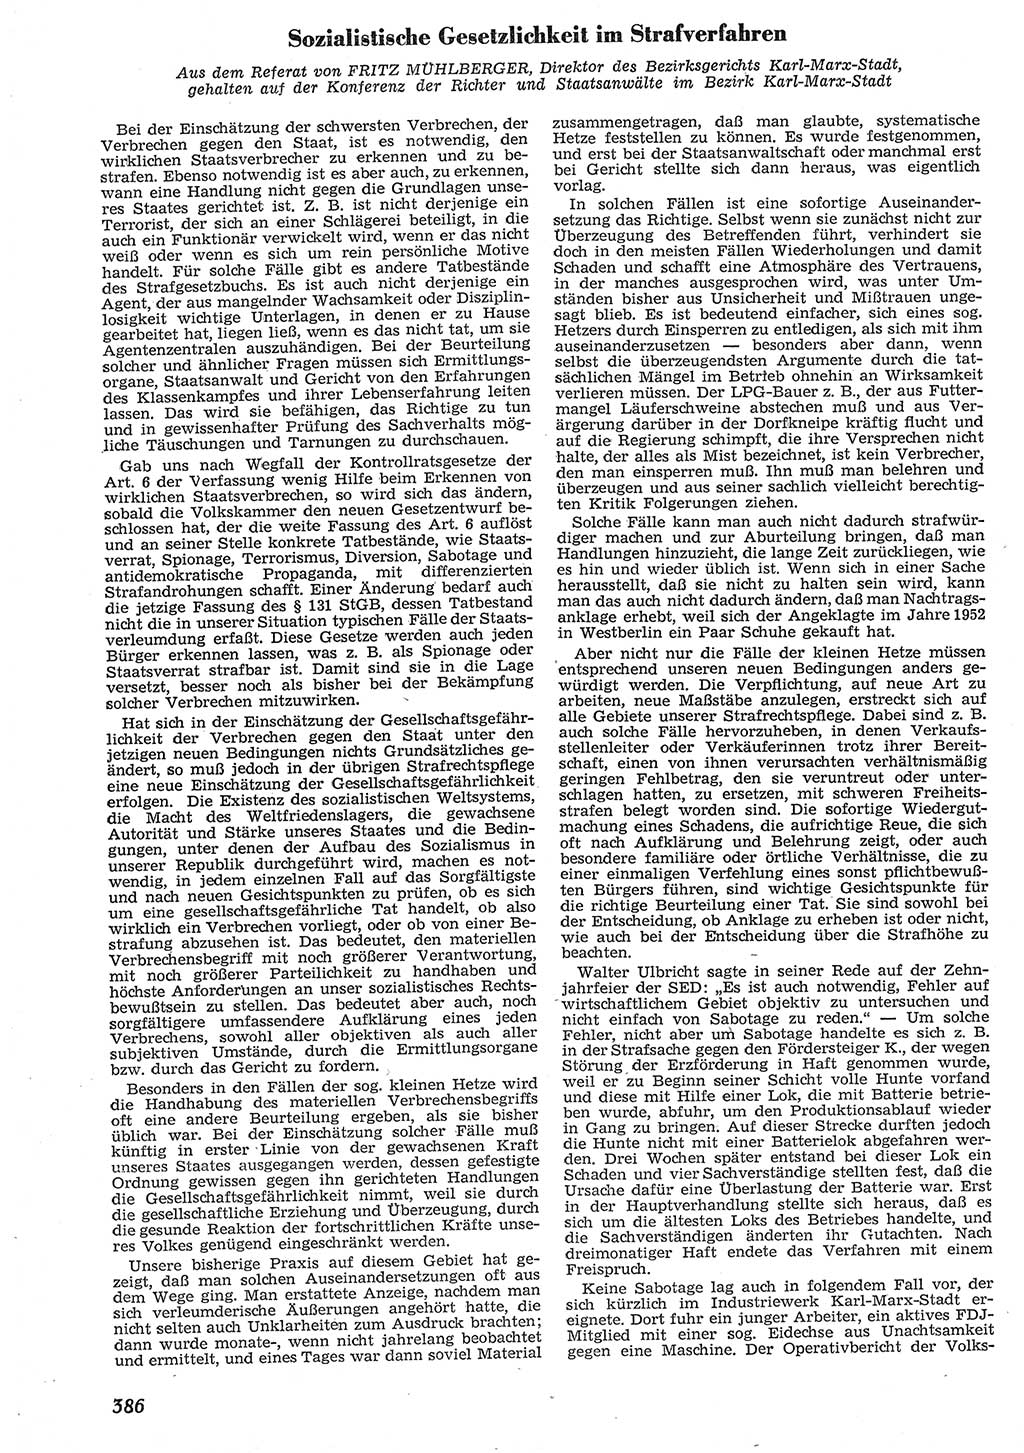 Neue Justiz (NJ), Zeitschrift für Recht und Rechtswissenschaft [Deutsche Demokratische Republik (DDR)], 10. Jahrgang 1956, Seite 386 (NJ DDR 1956, S. 386)